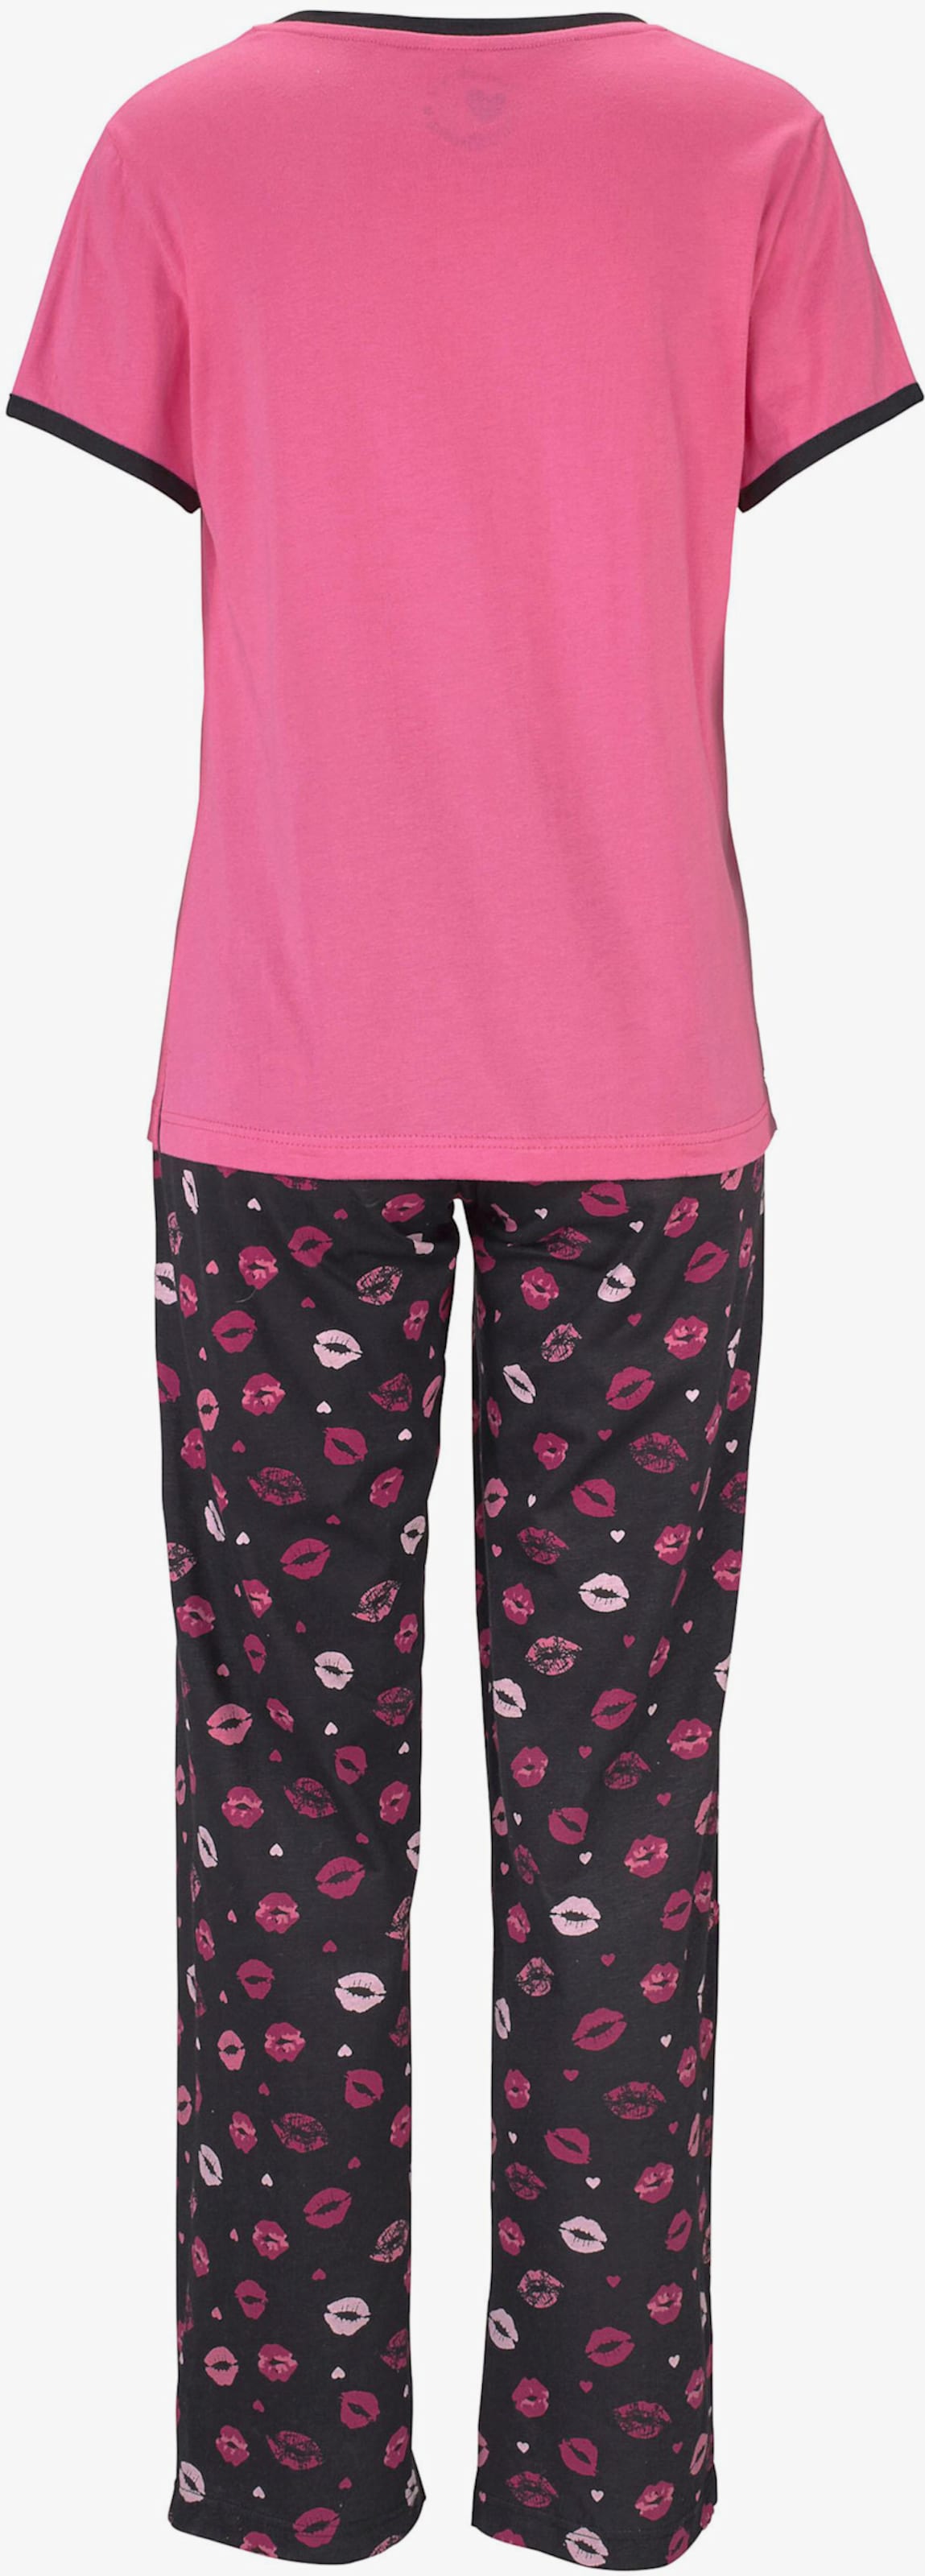 Vivance Dreams Pyjama - roze-zwart gedessineerd